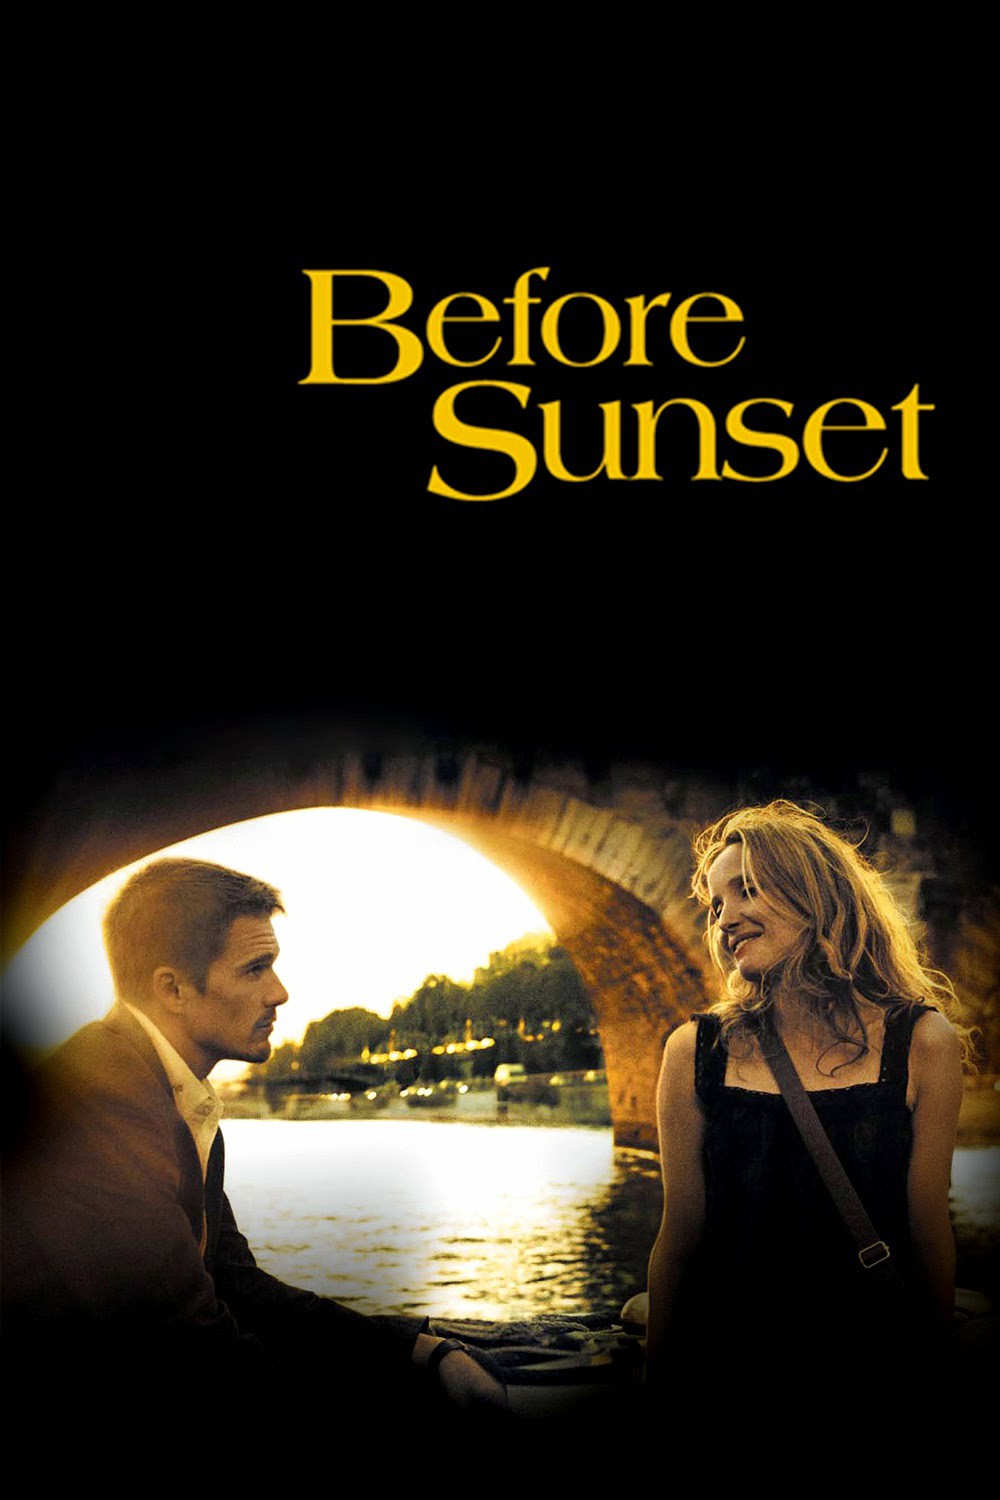 trailer before sunset - Trước lúc hoàng hôn: Viết tiếp một câu chuyện tình yêu